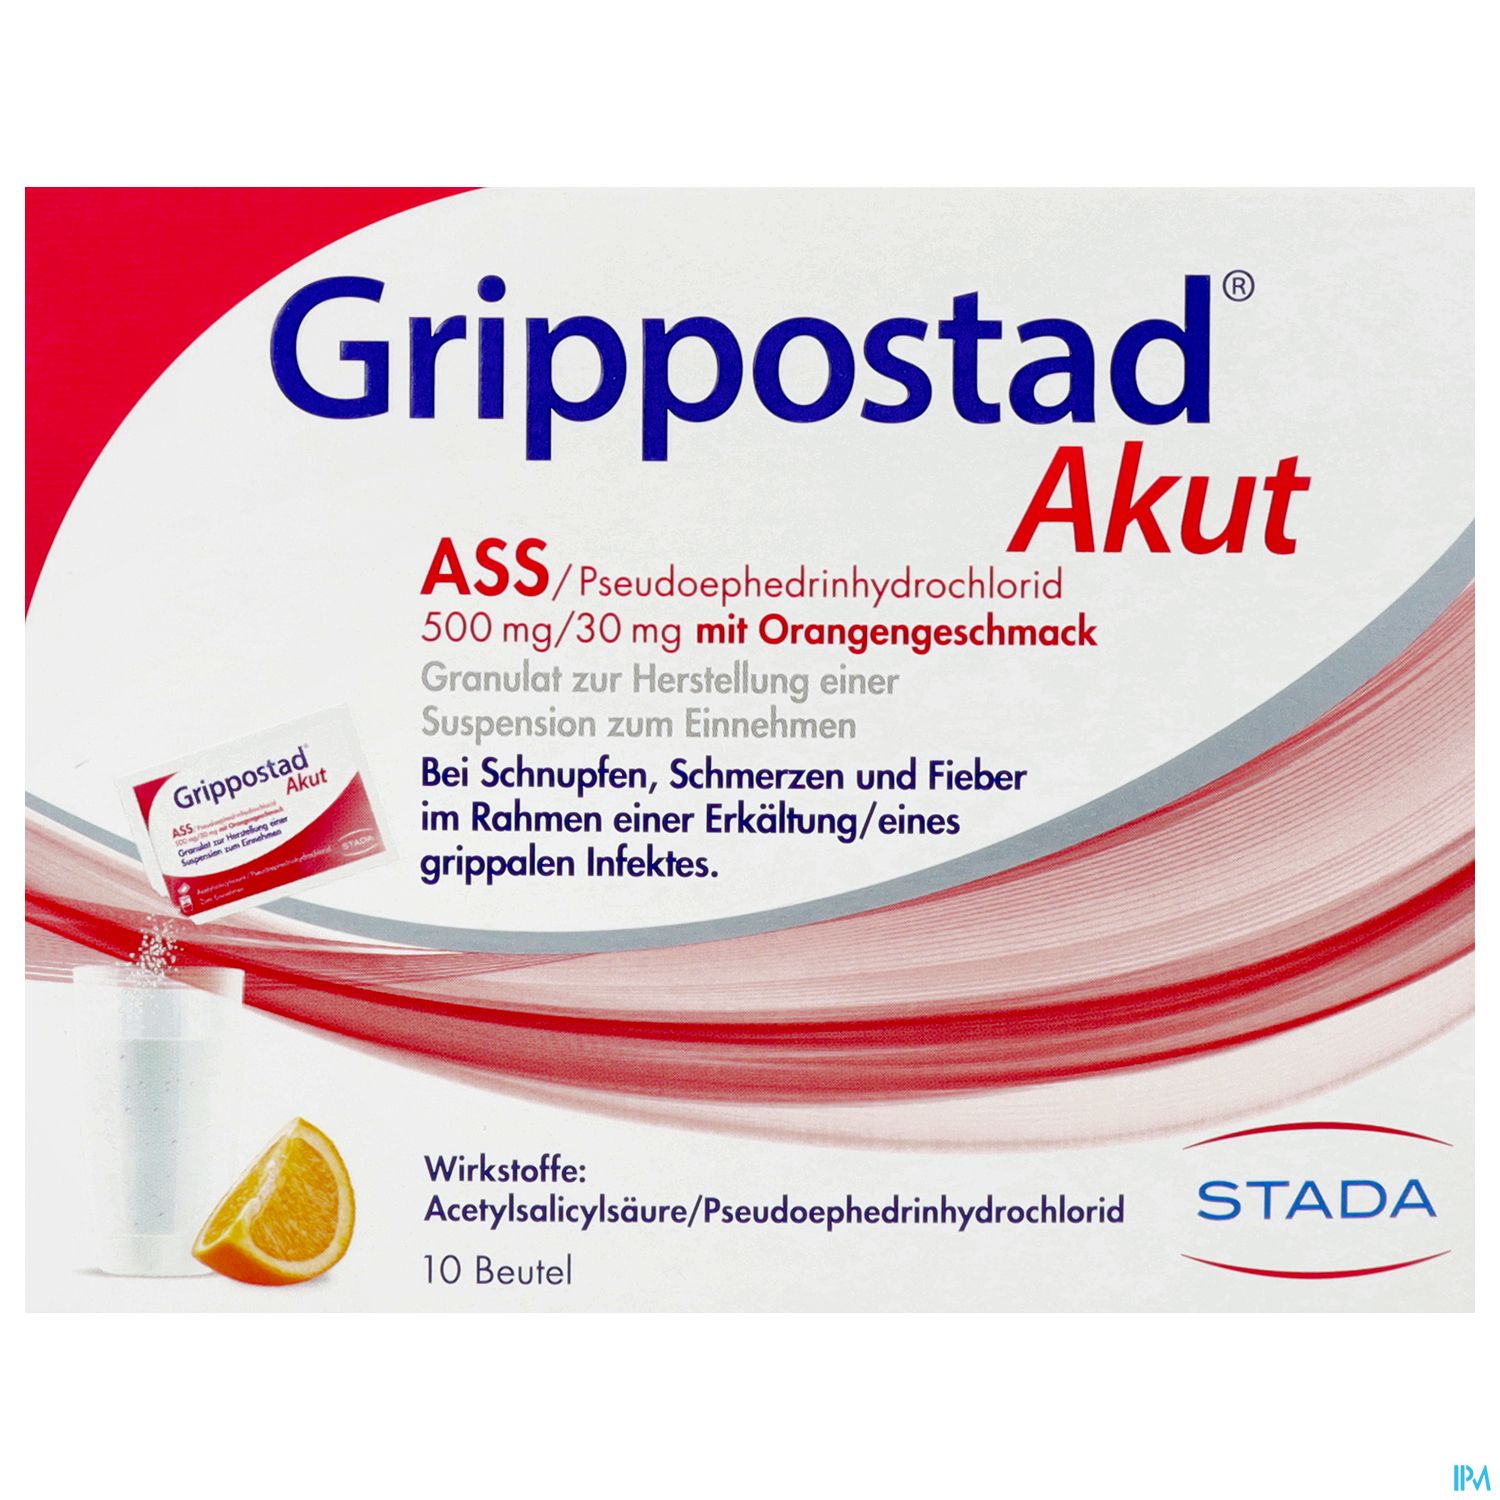 Grippostad Akut ASS/Pseudoephedrinhydrochlorid 500 mg/30 mg mit Orangengeschmack - Granulat zur Herstellung einer Suspension zum Einnehmen